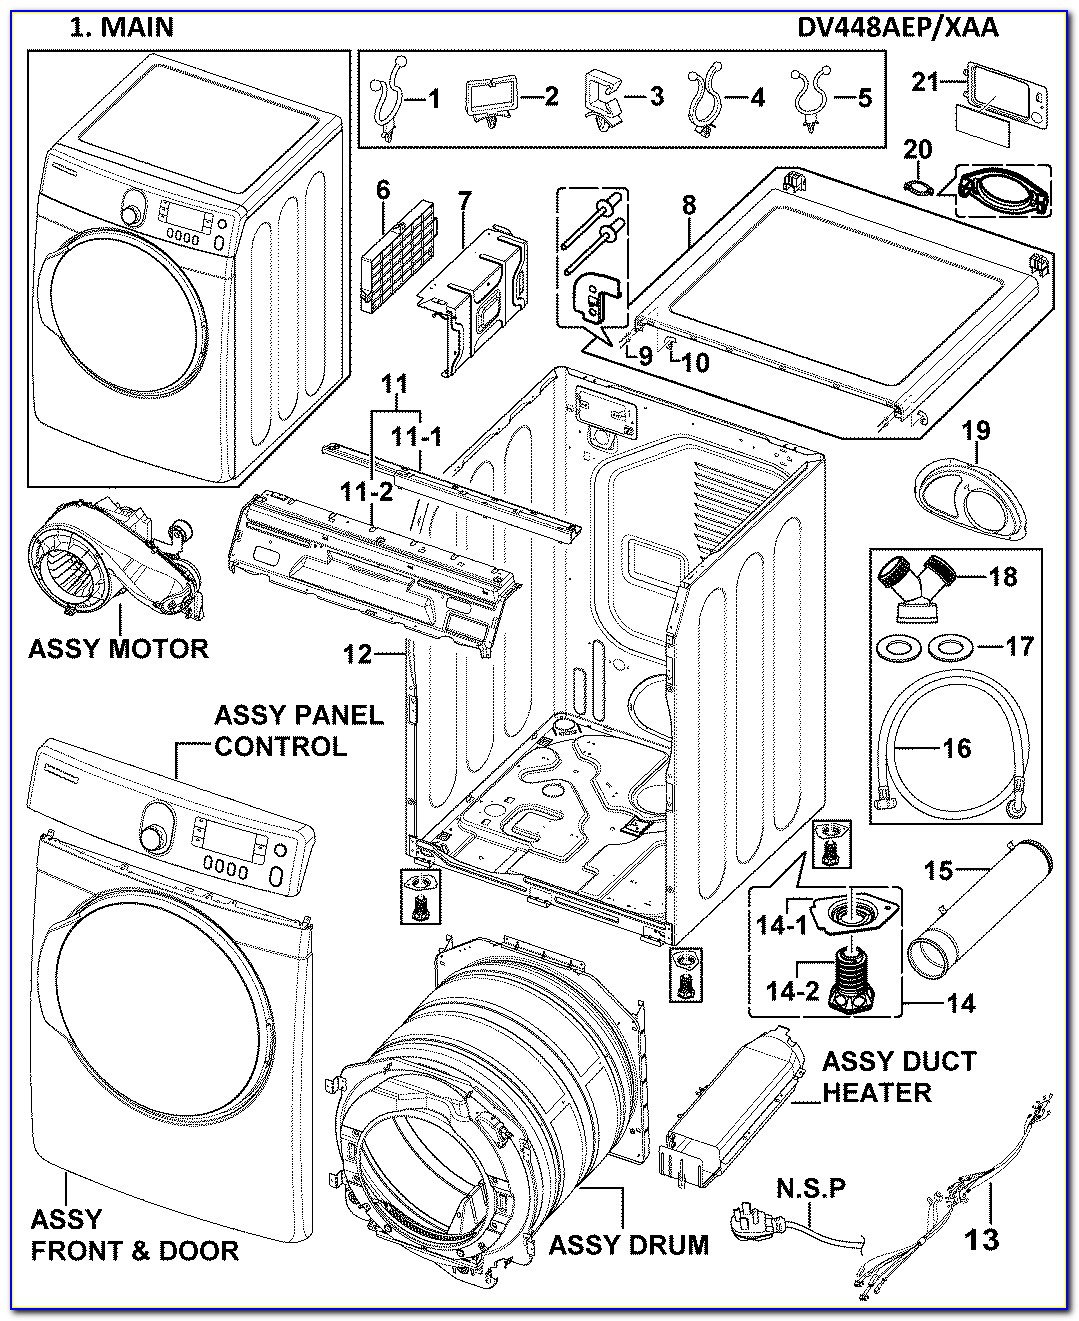 Samsung Gas Dryer Wiring Diagram